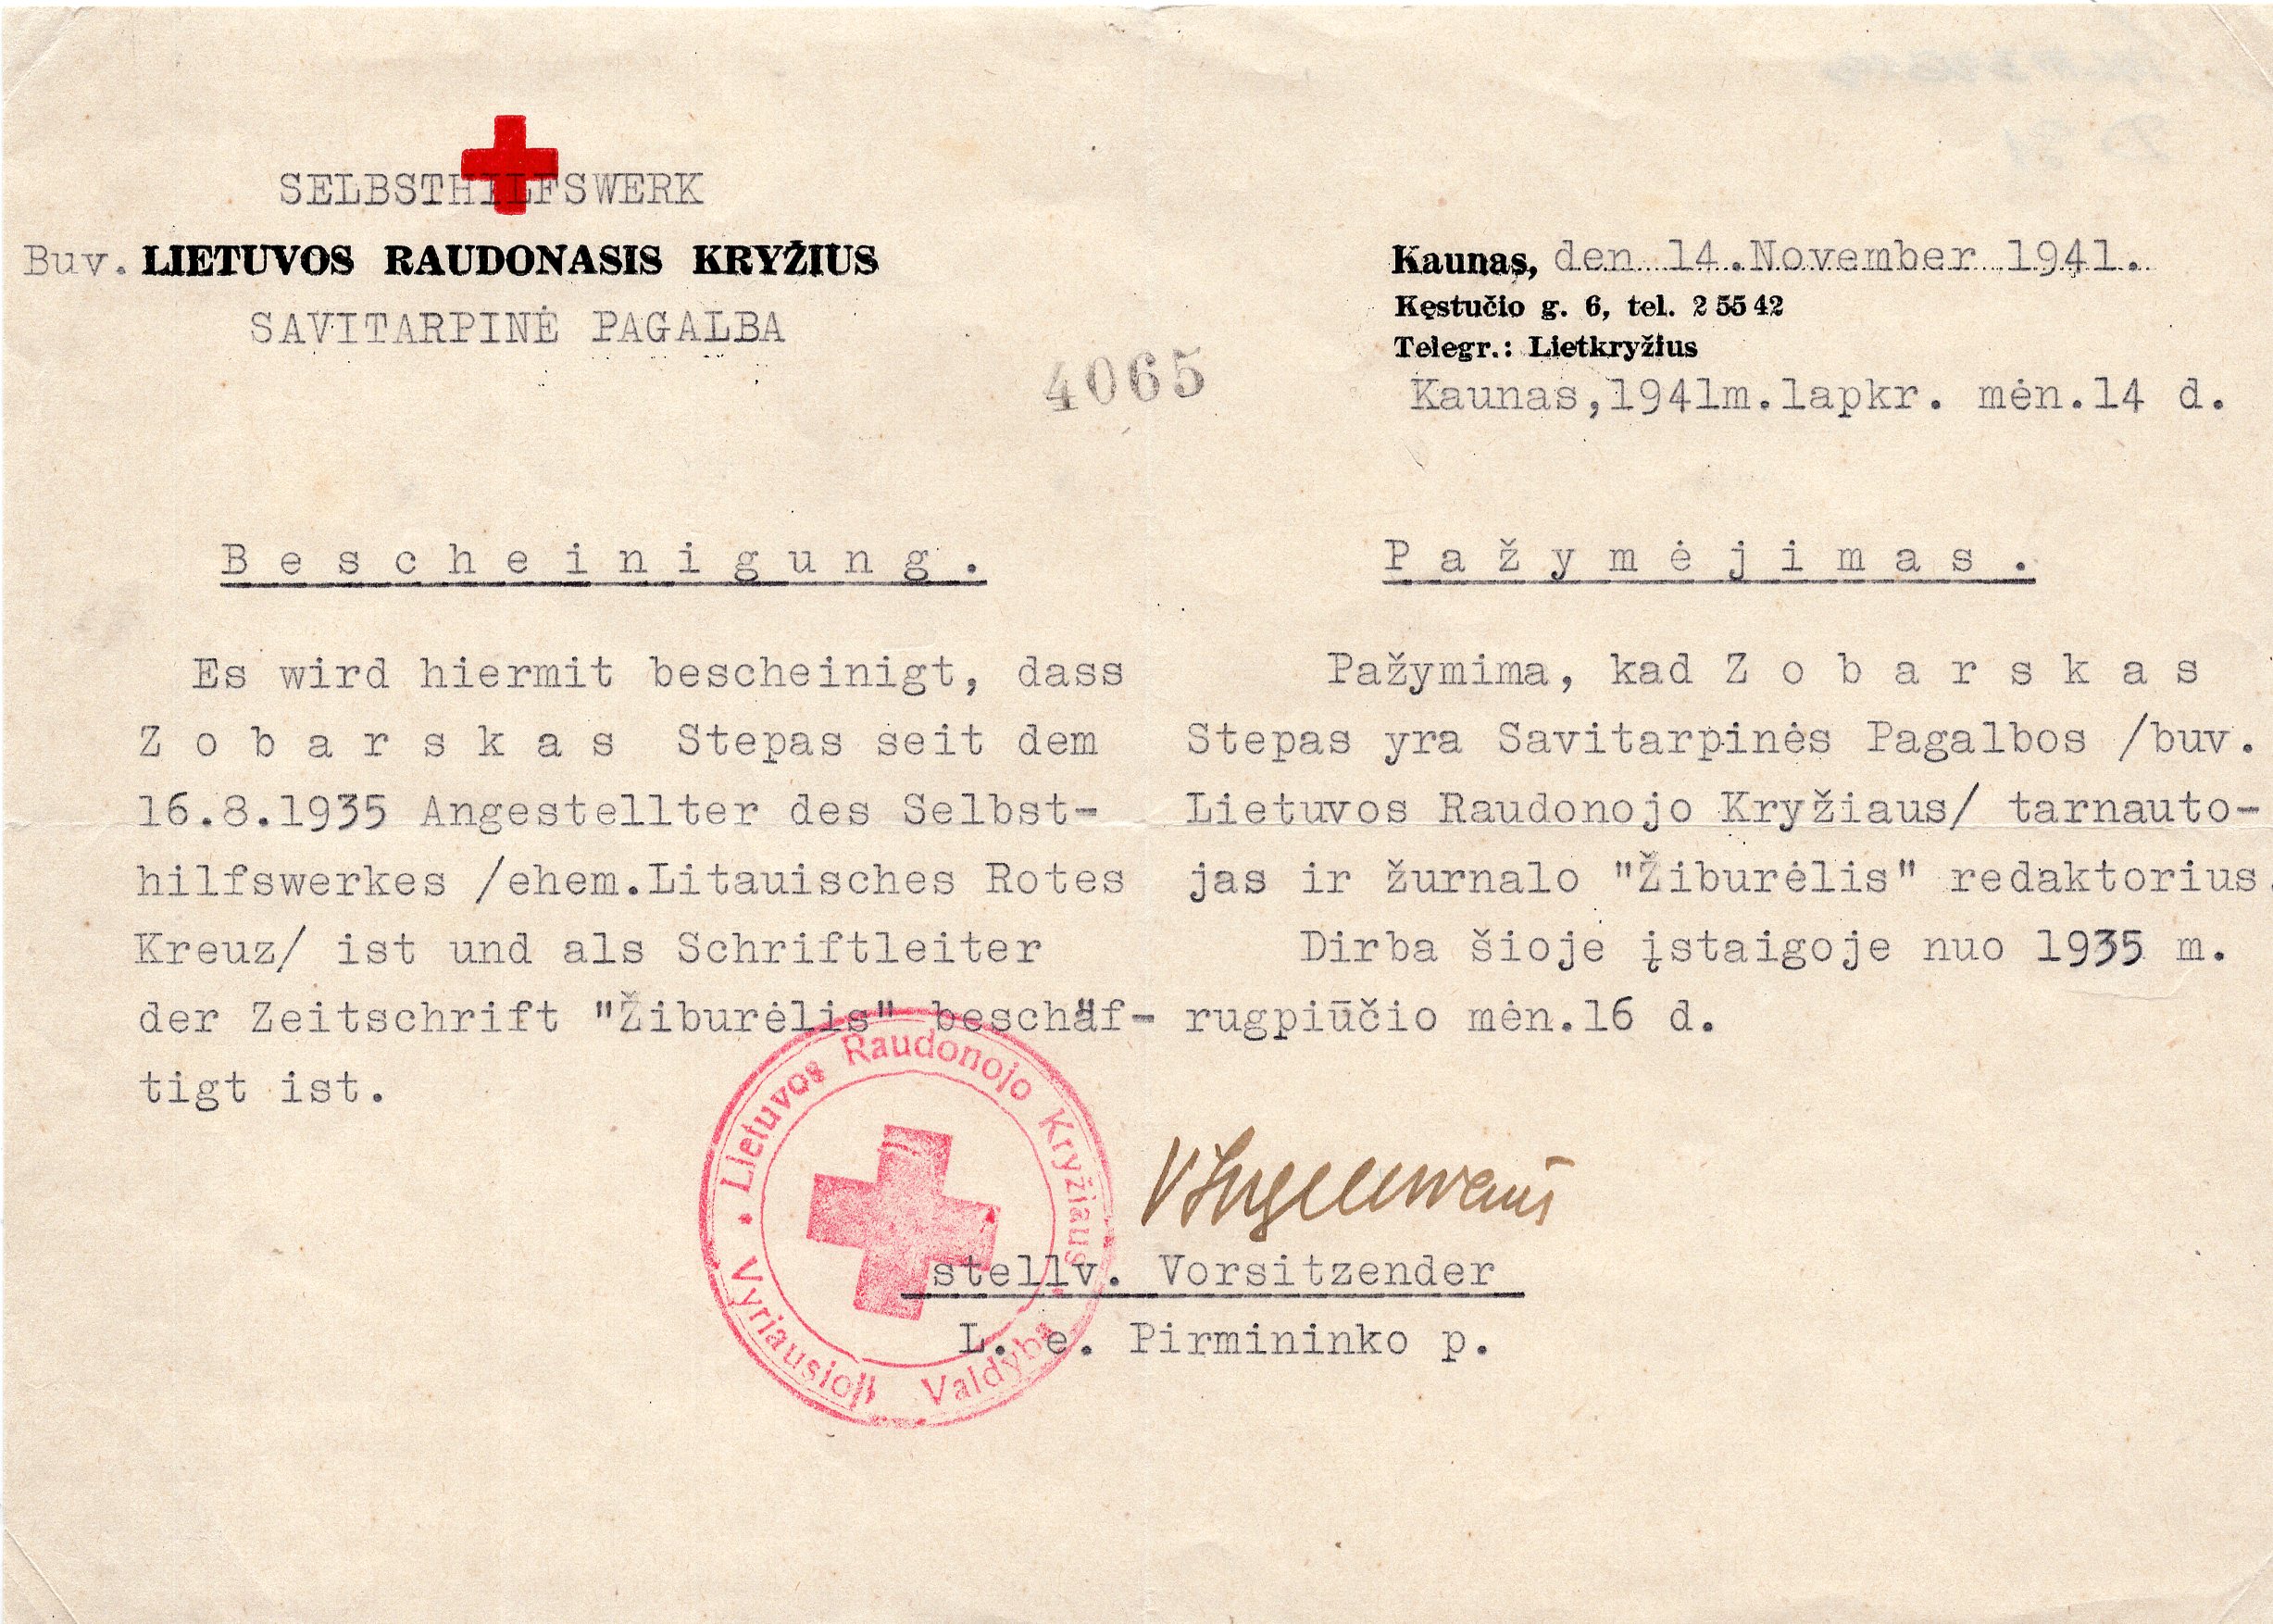 Pažymėjimas apie S. Zobarsko darbą Raudonajame kryžiuje. 1941 m. lapkričio 11 d.